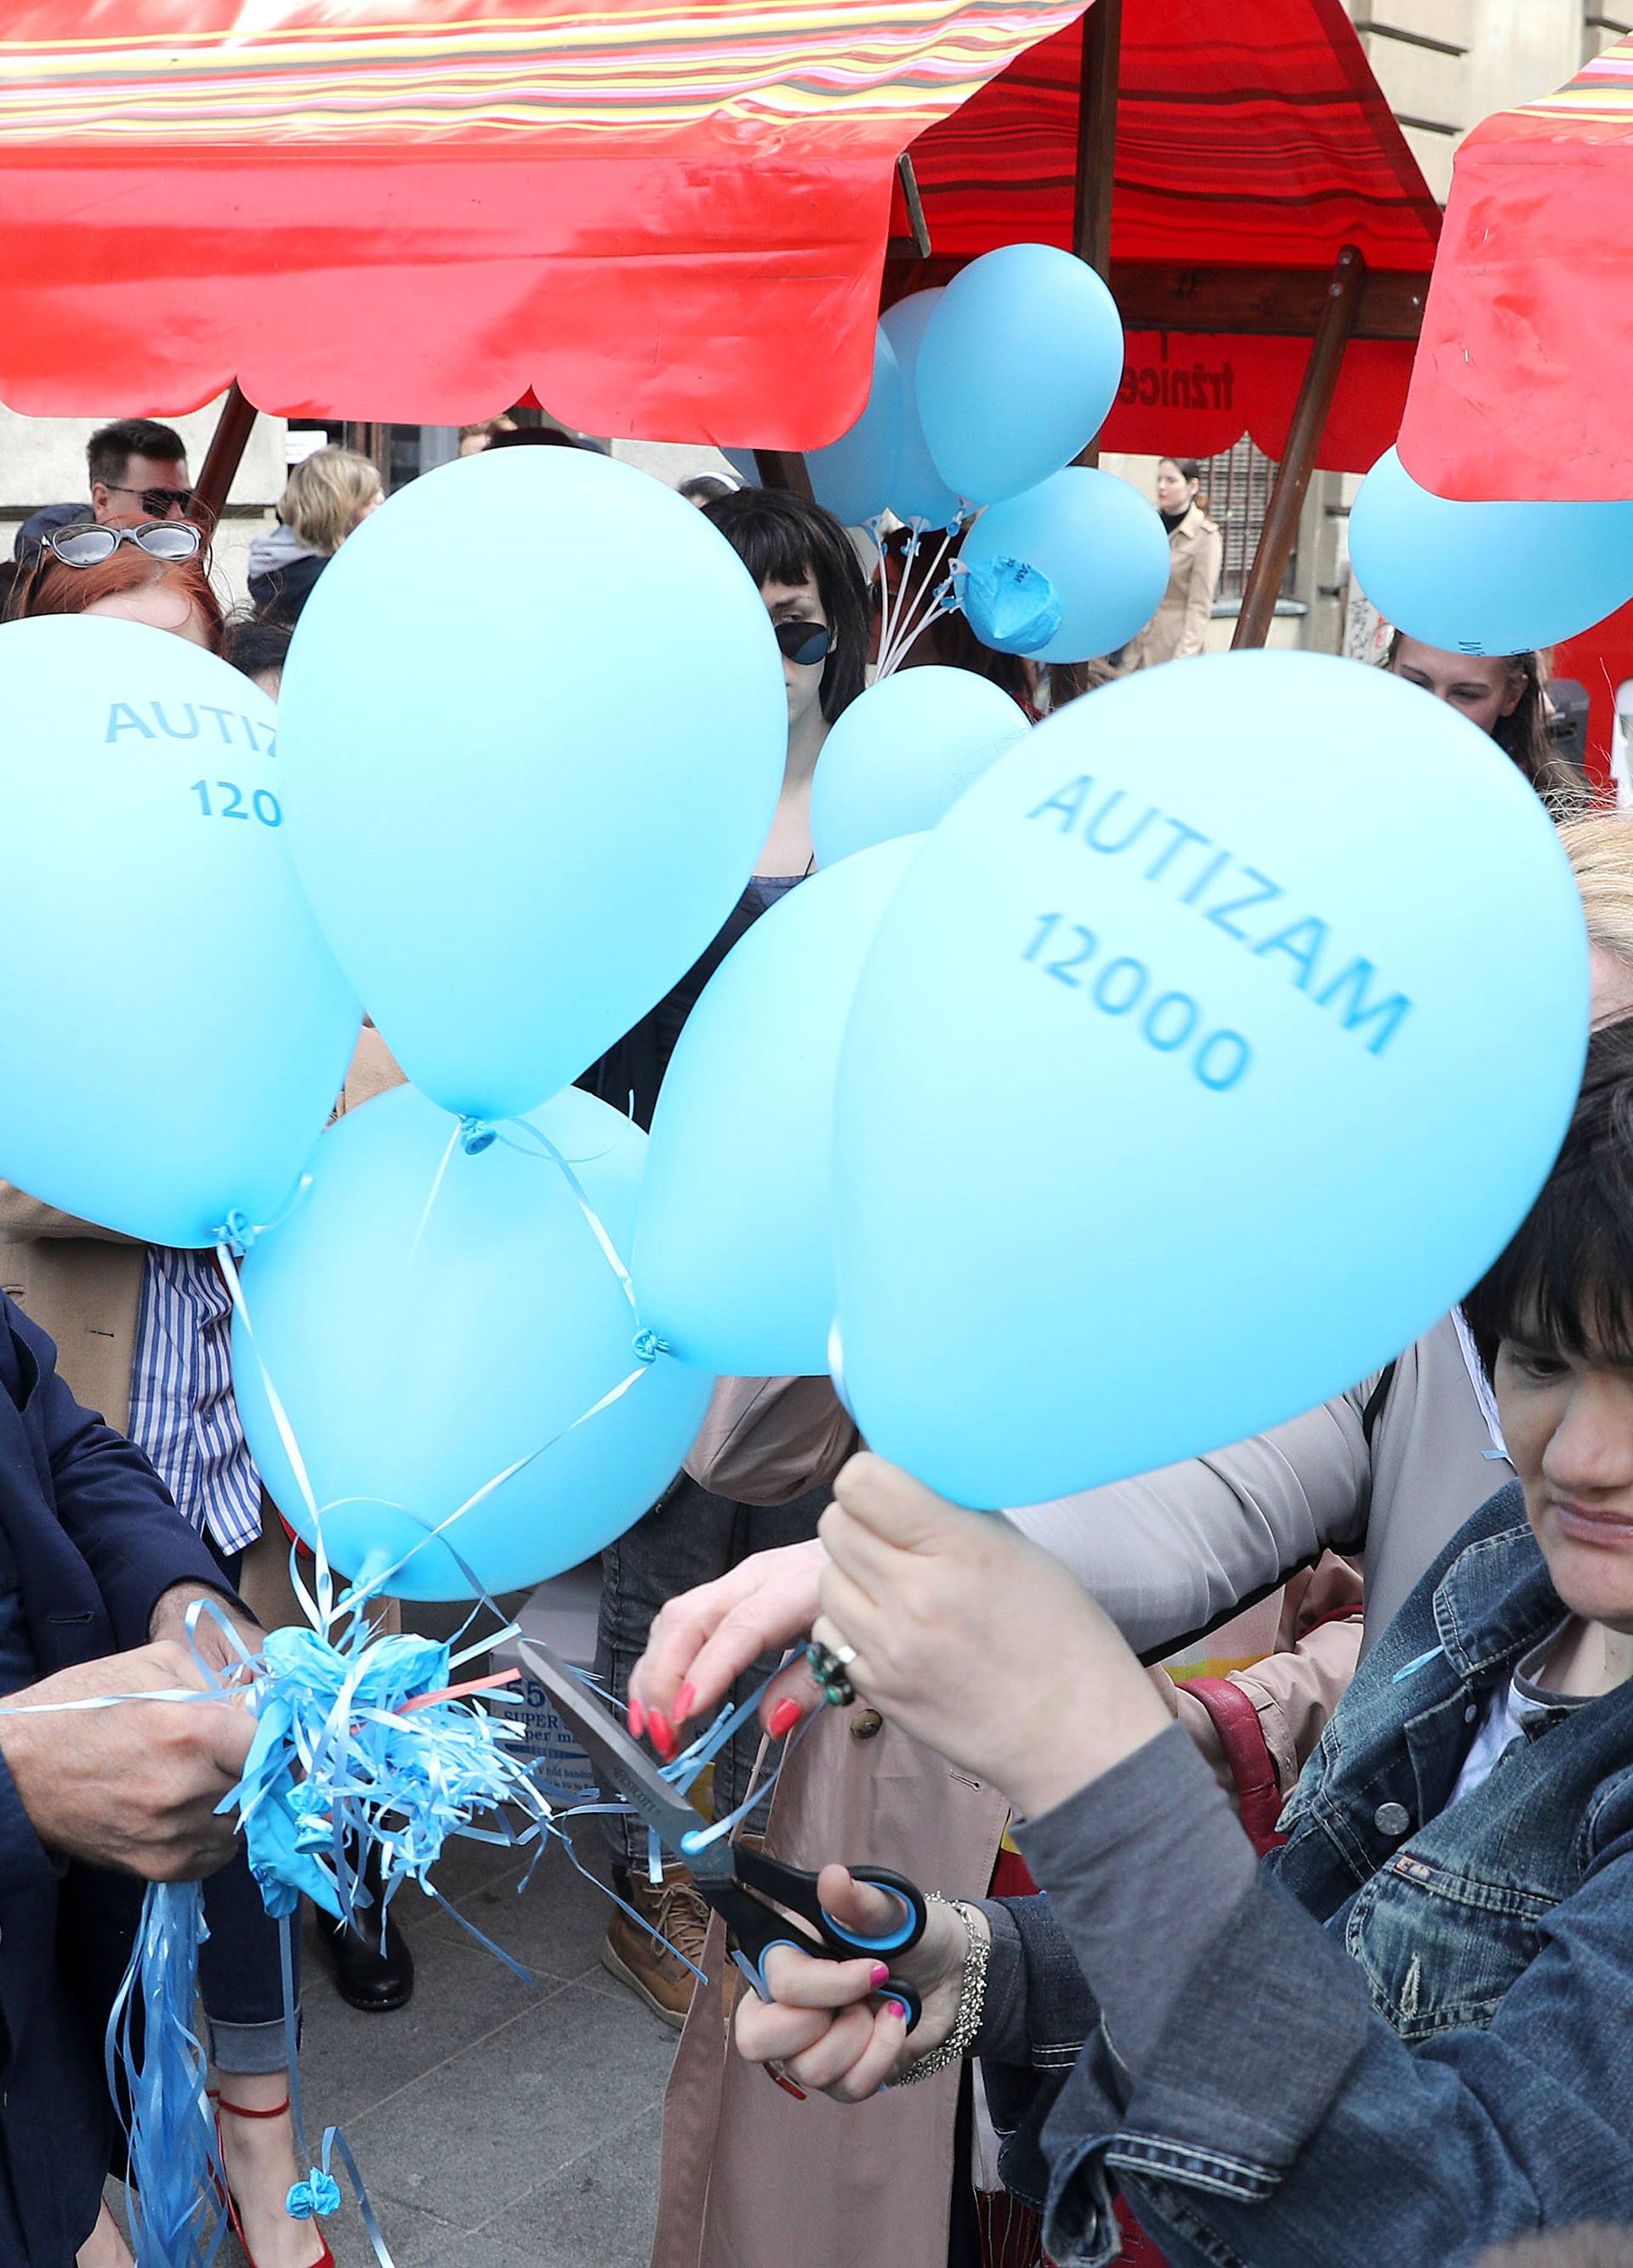 Svjetski dan autizma: Pustili plave balone u centru Zagreba